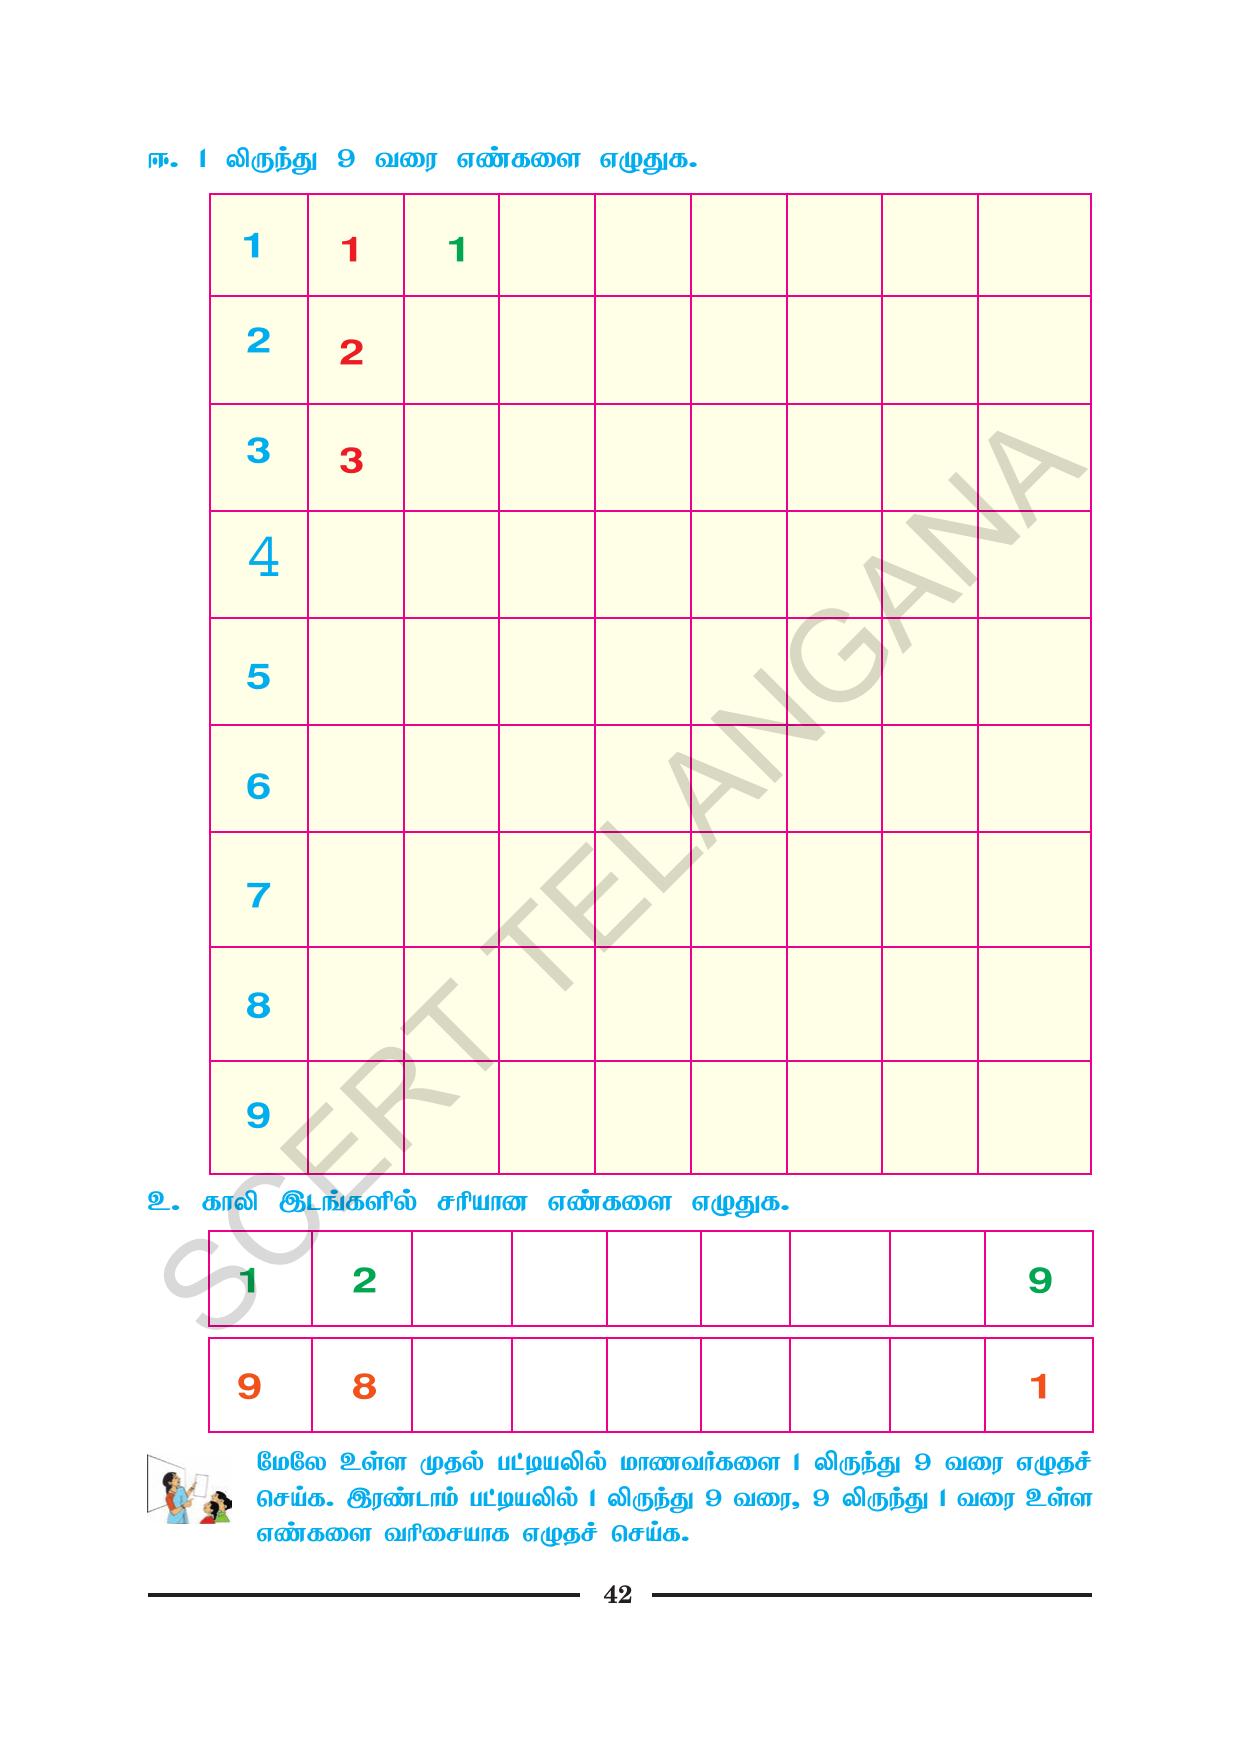 TS SCERT Class 1 Maths (Tamil Medium) Text Book - Page 54